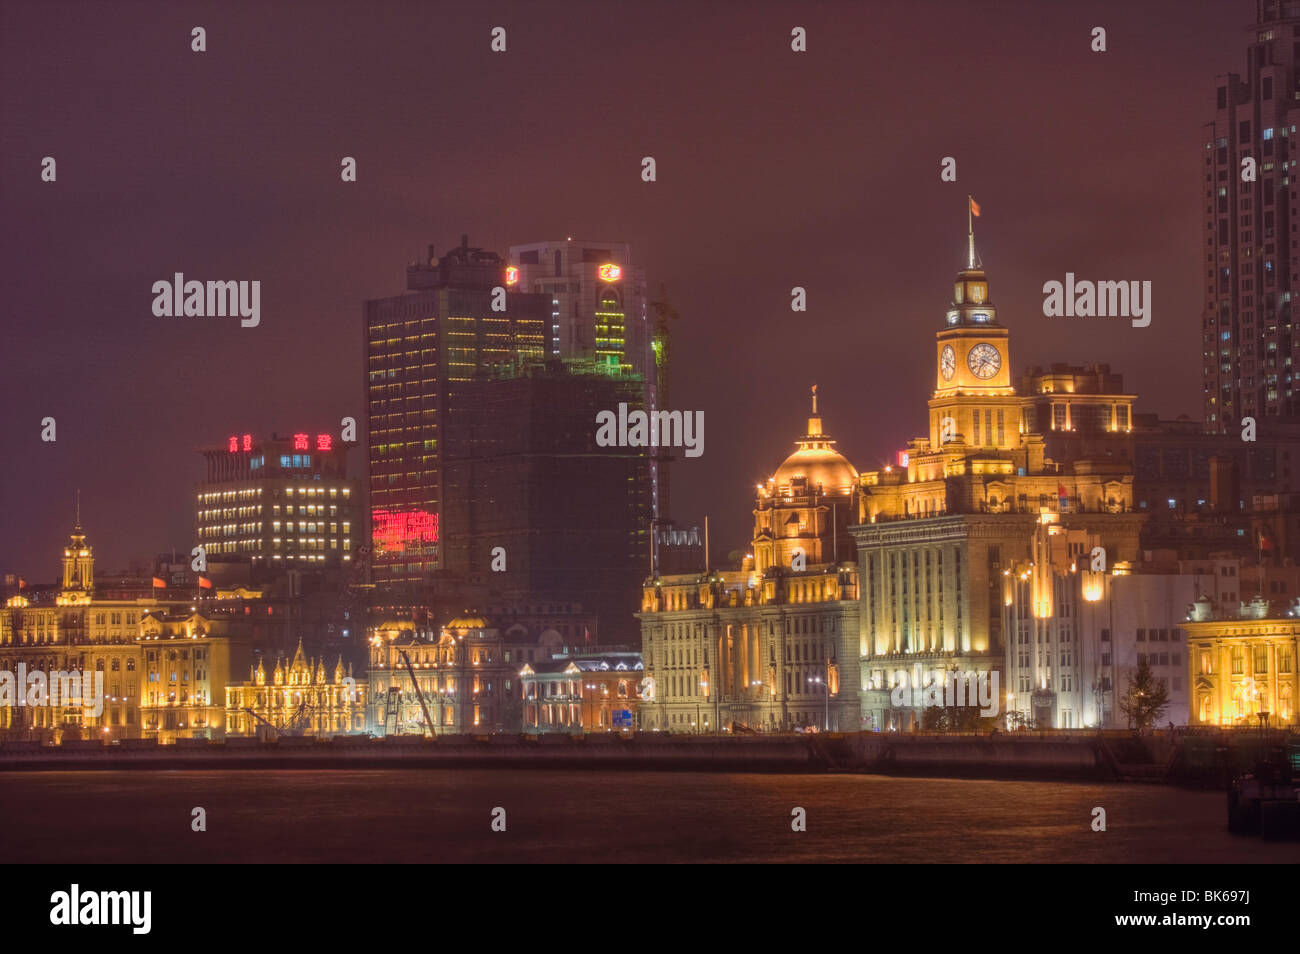 Vue de nuit sur le bund de shanghai puxi Banque D'Images